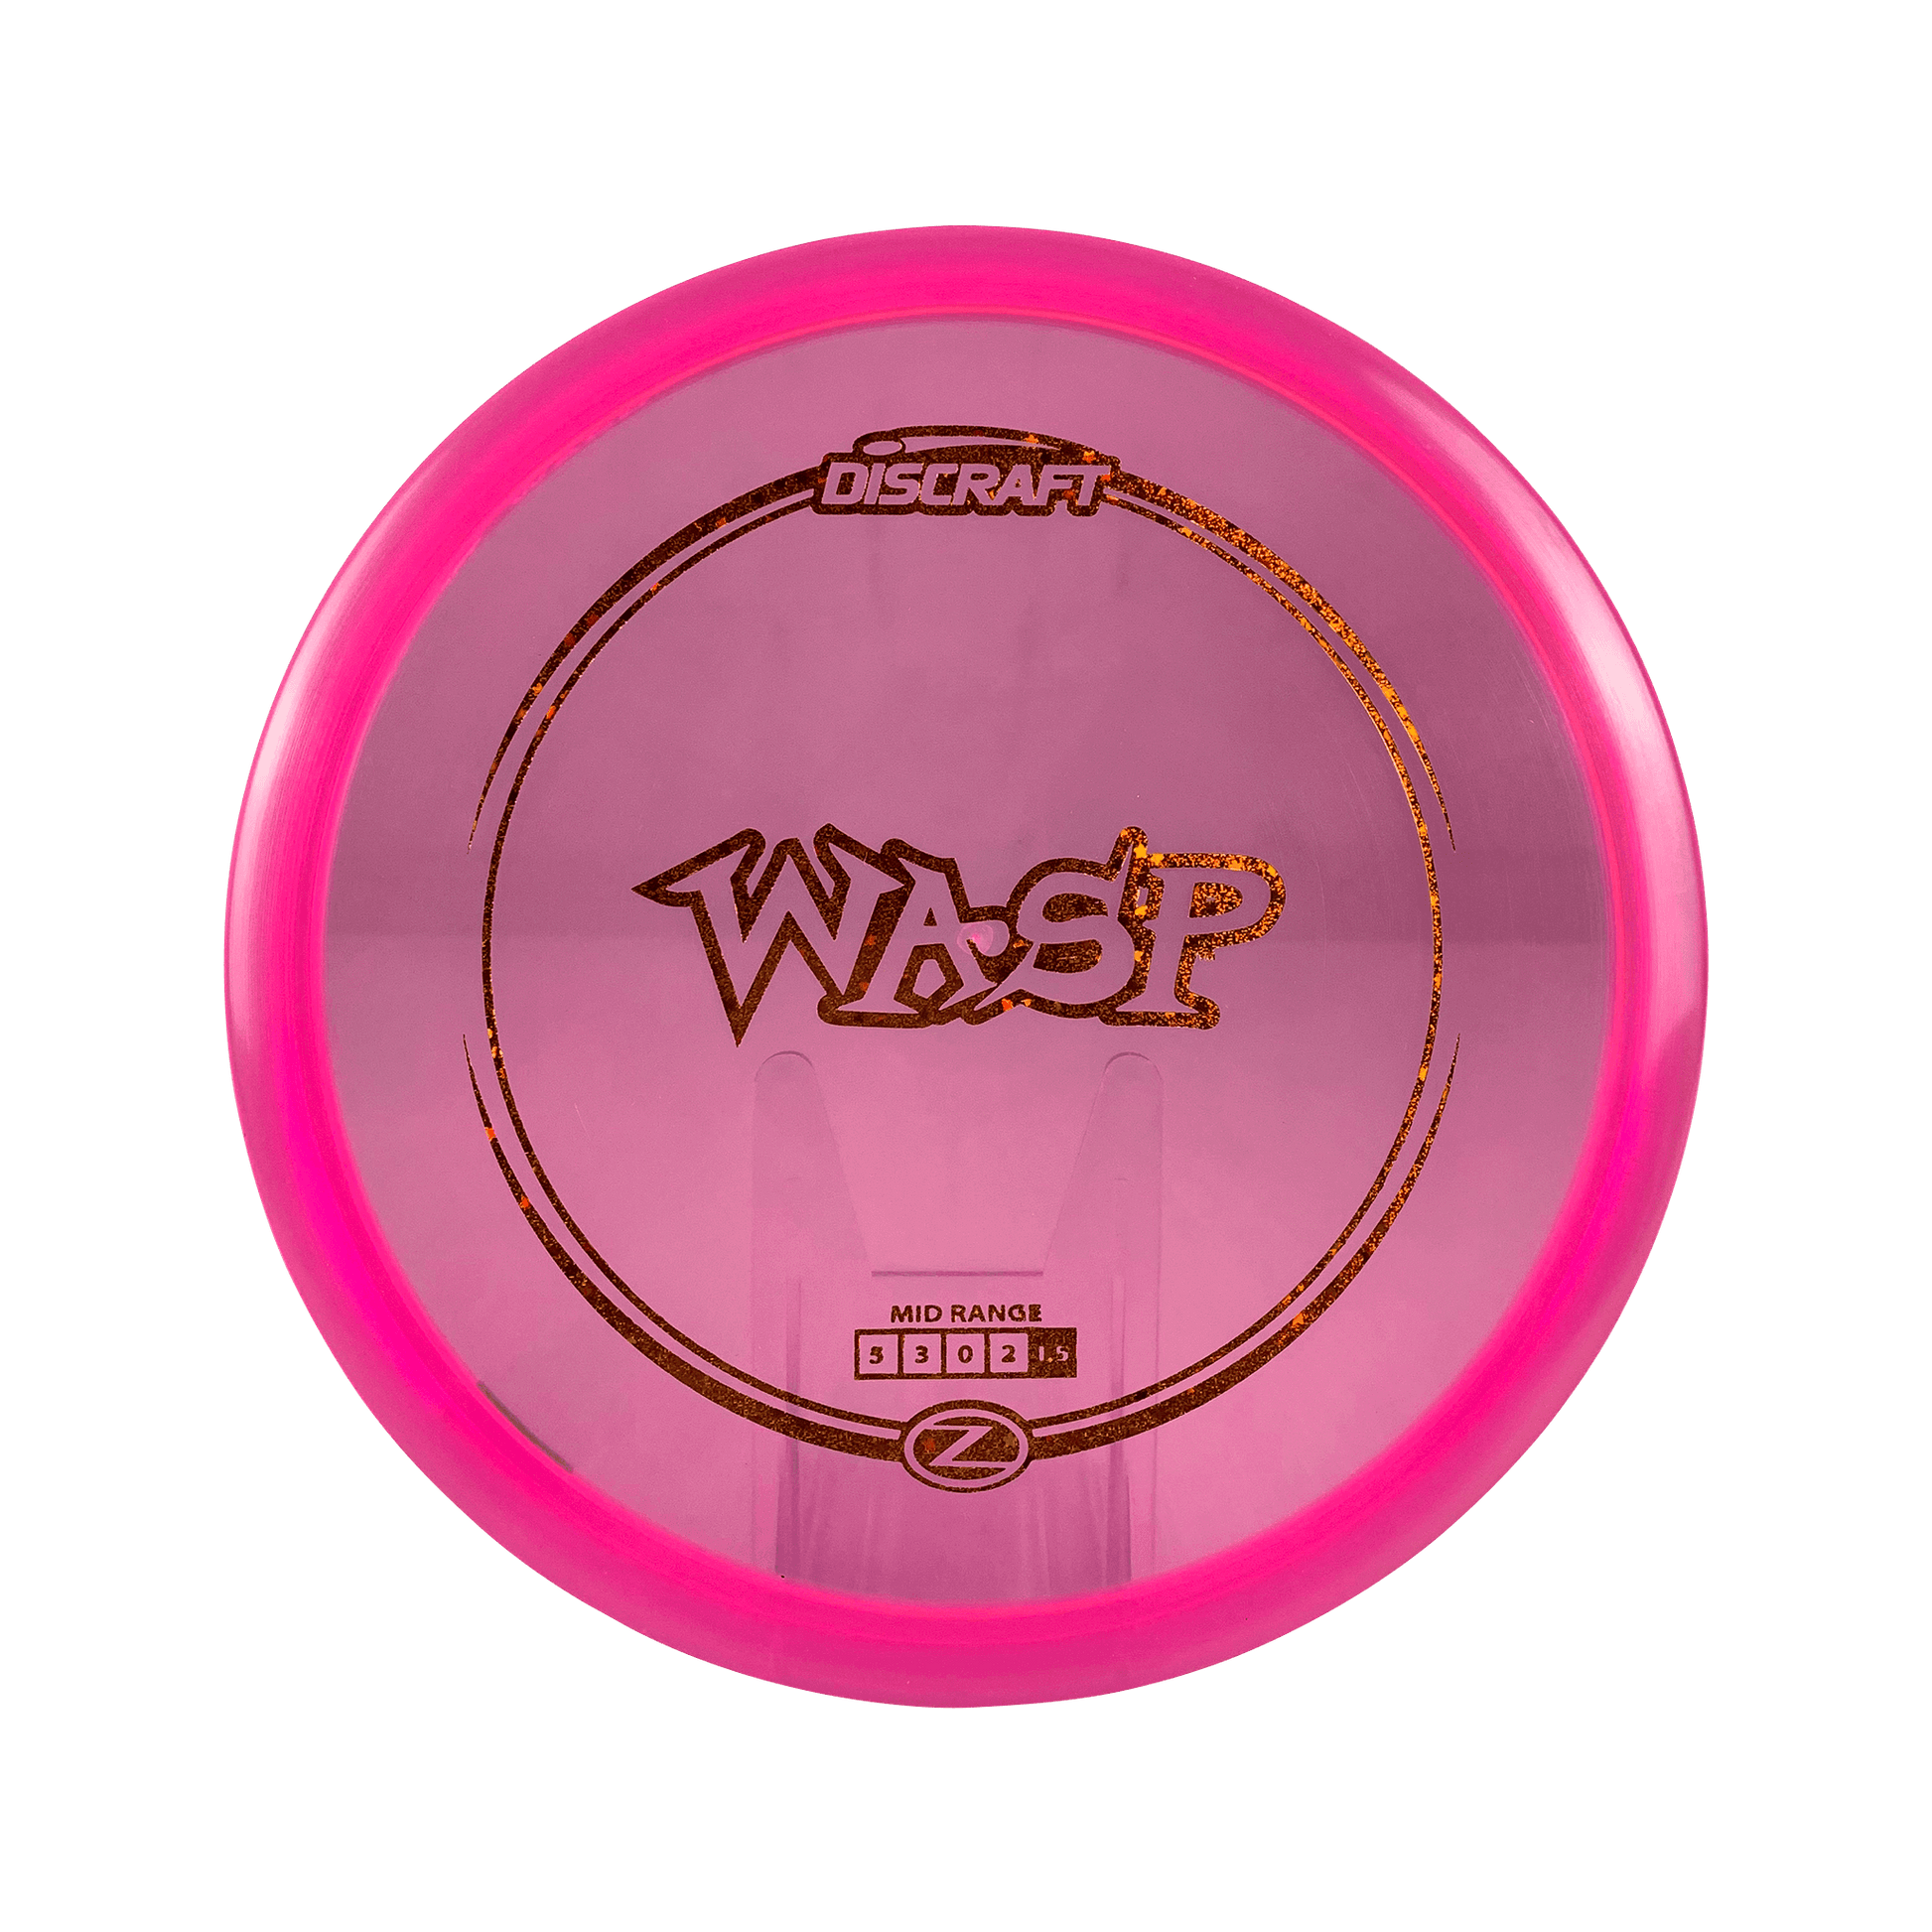 Z Wasp Disc Discraft light pink 177 